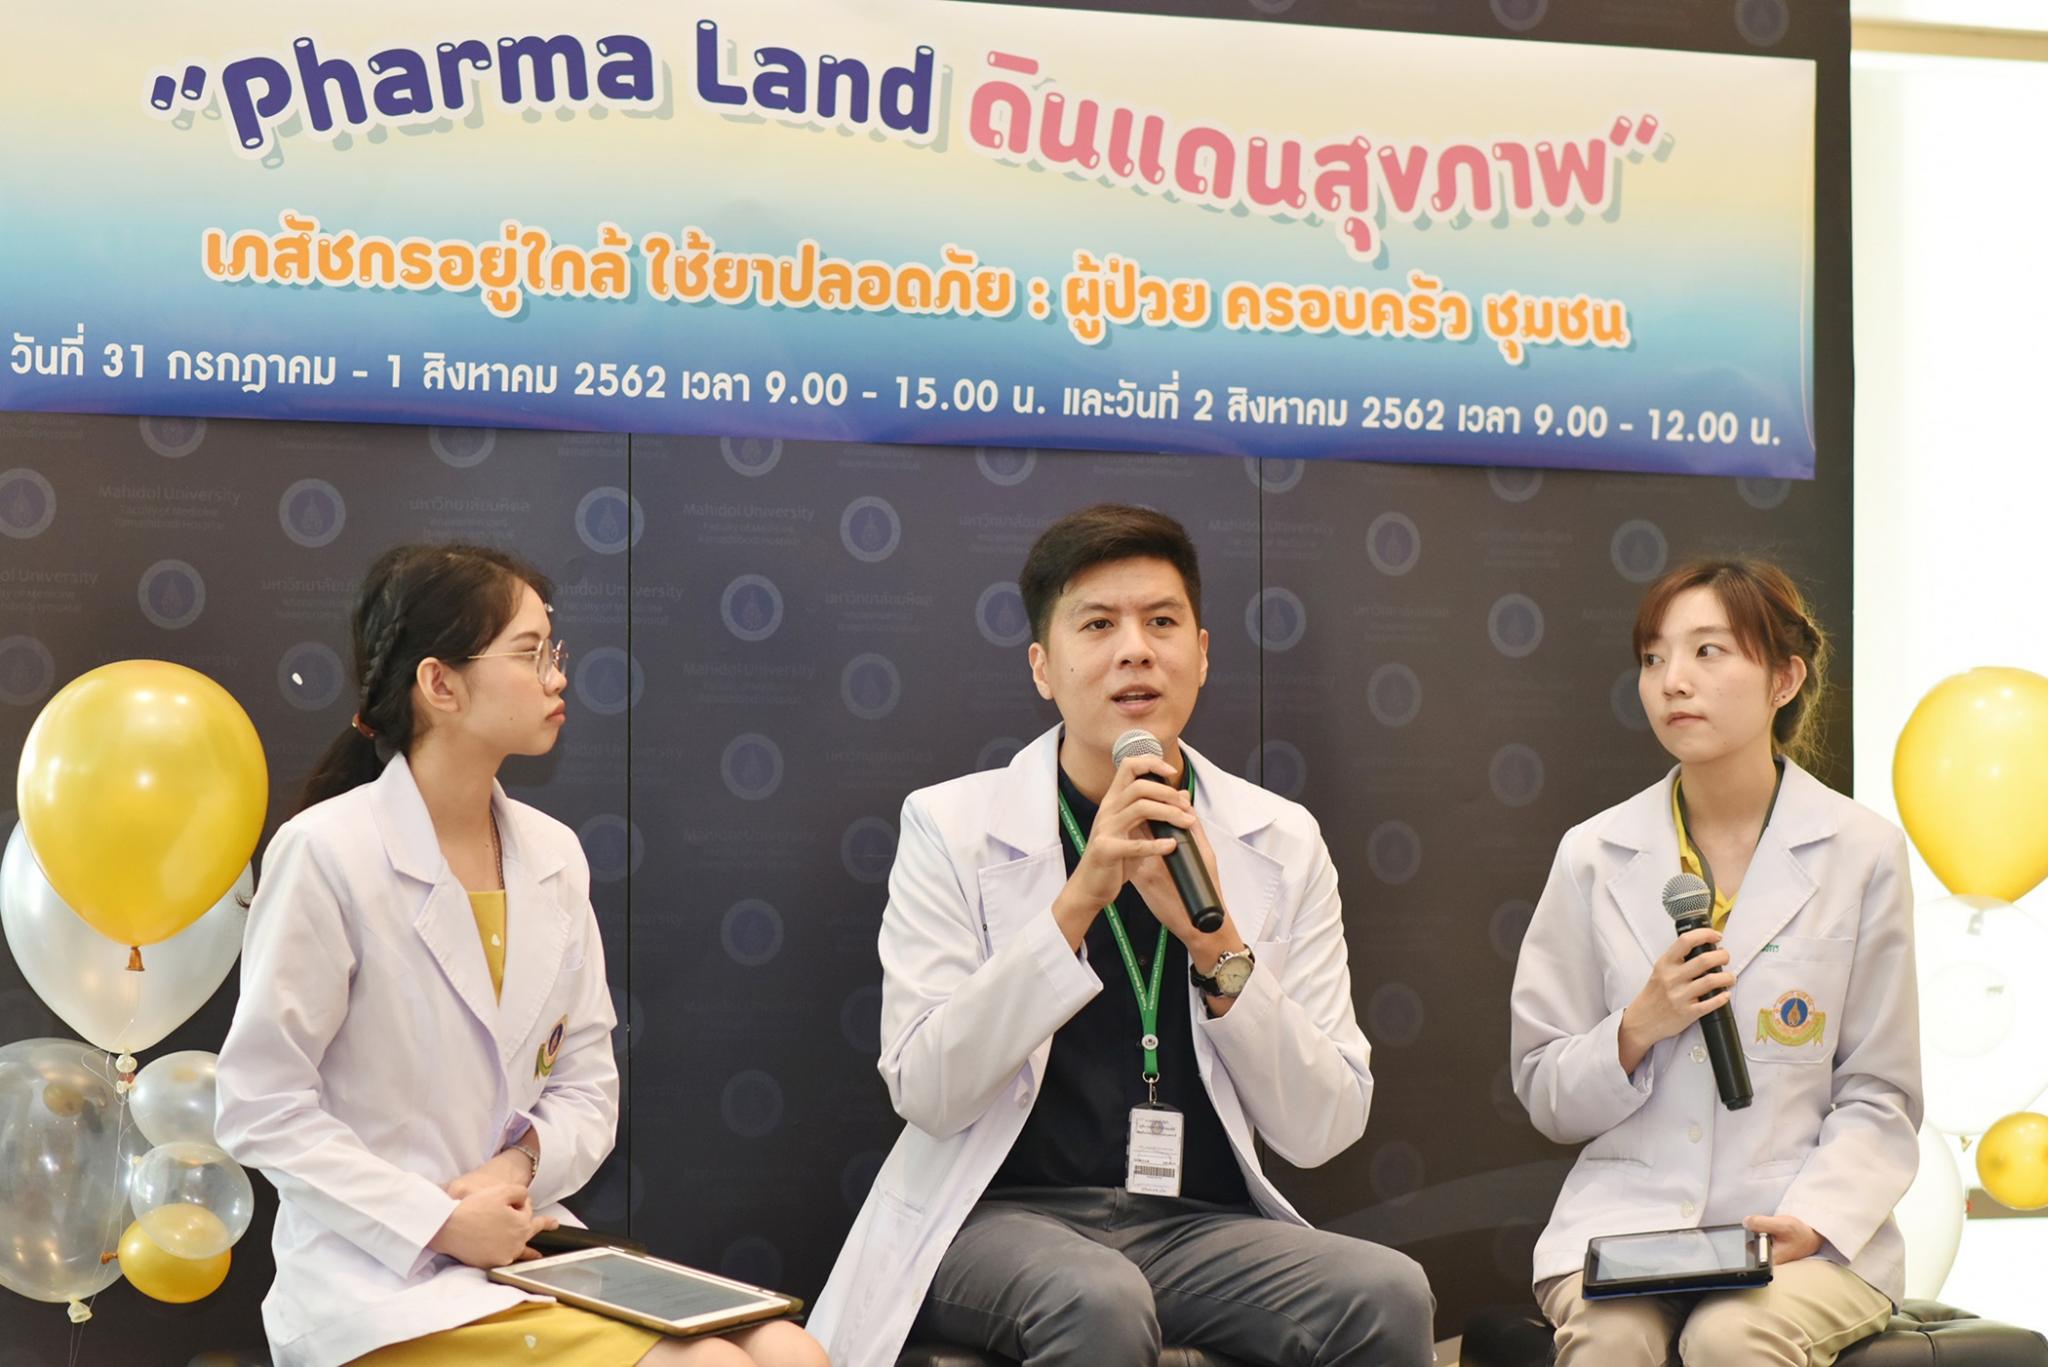 พิธีเปิดสัปดาห์เภสัชกรรม 2562 Pharma Land ดินแดนสุขภาพ